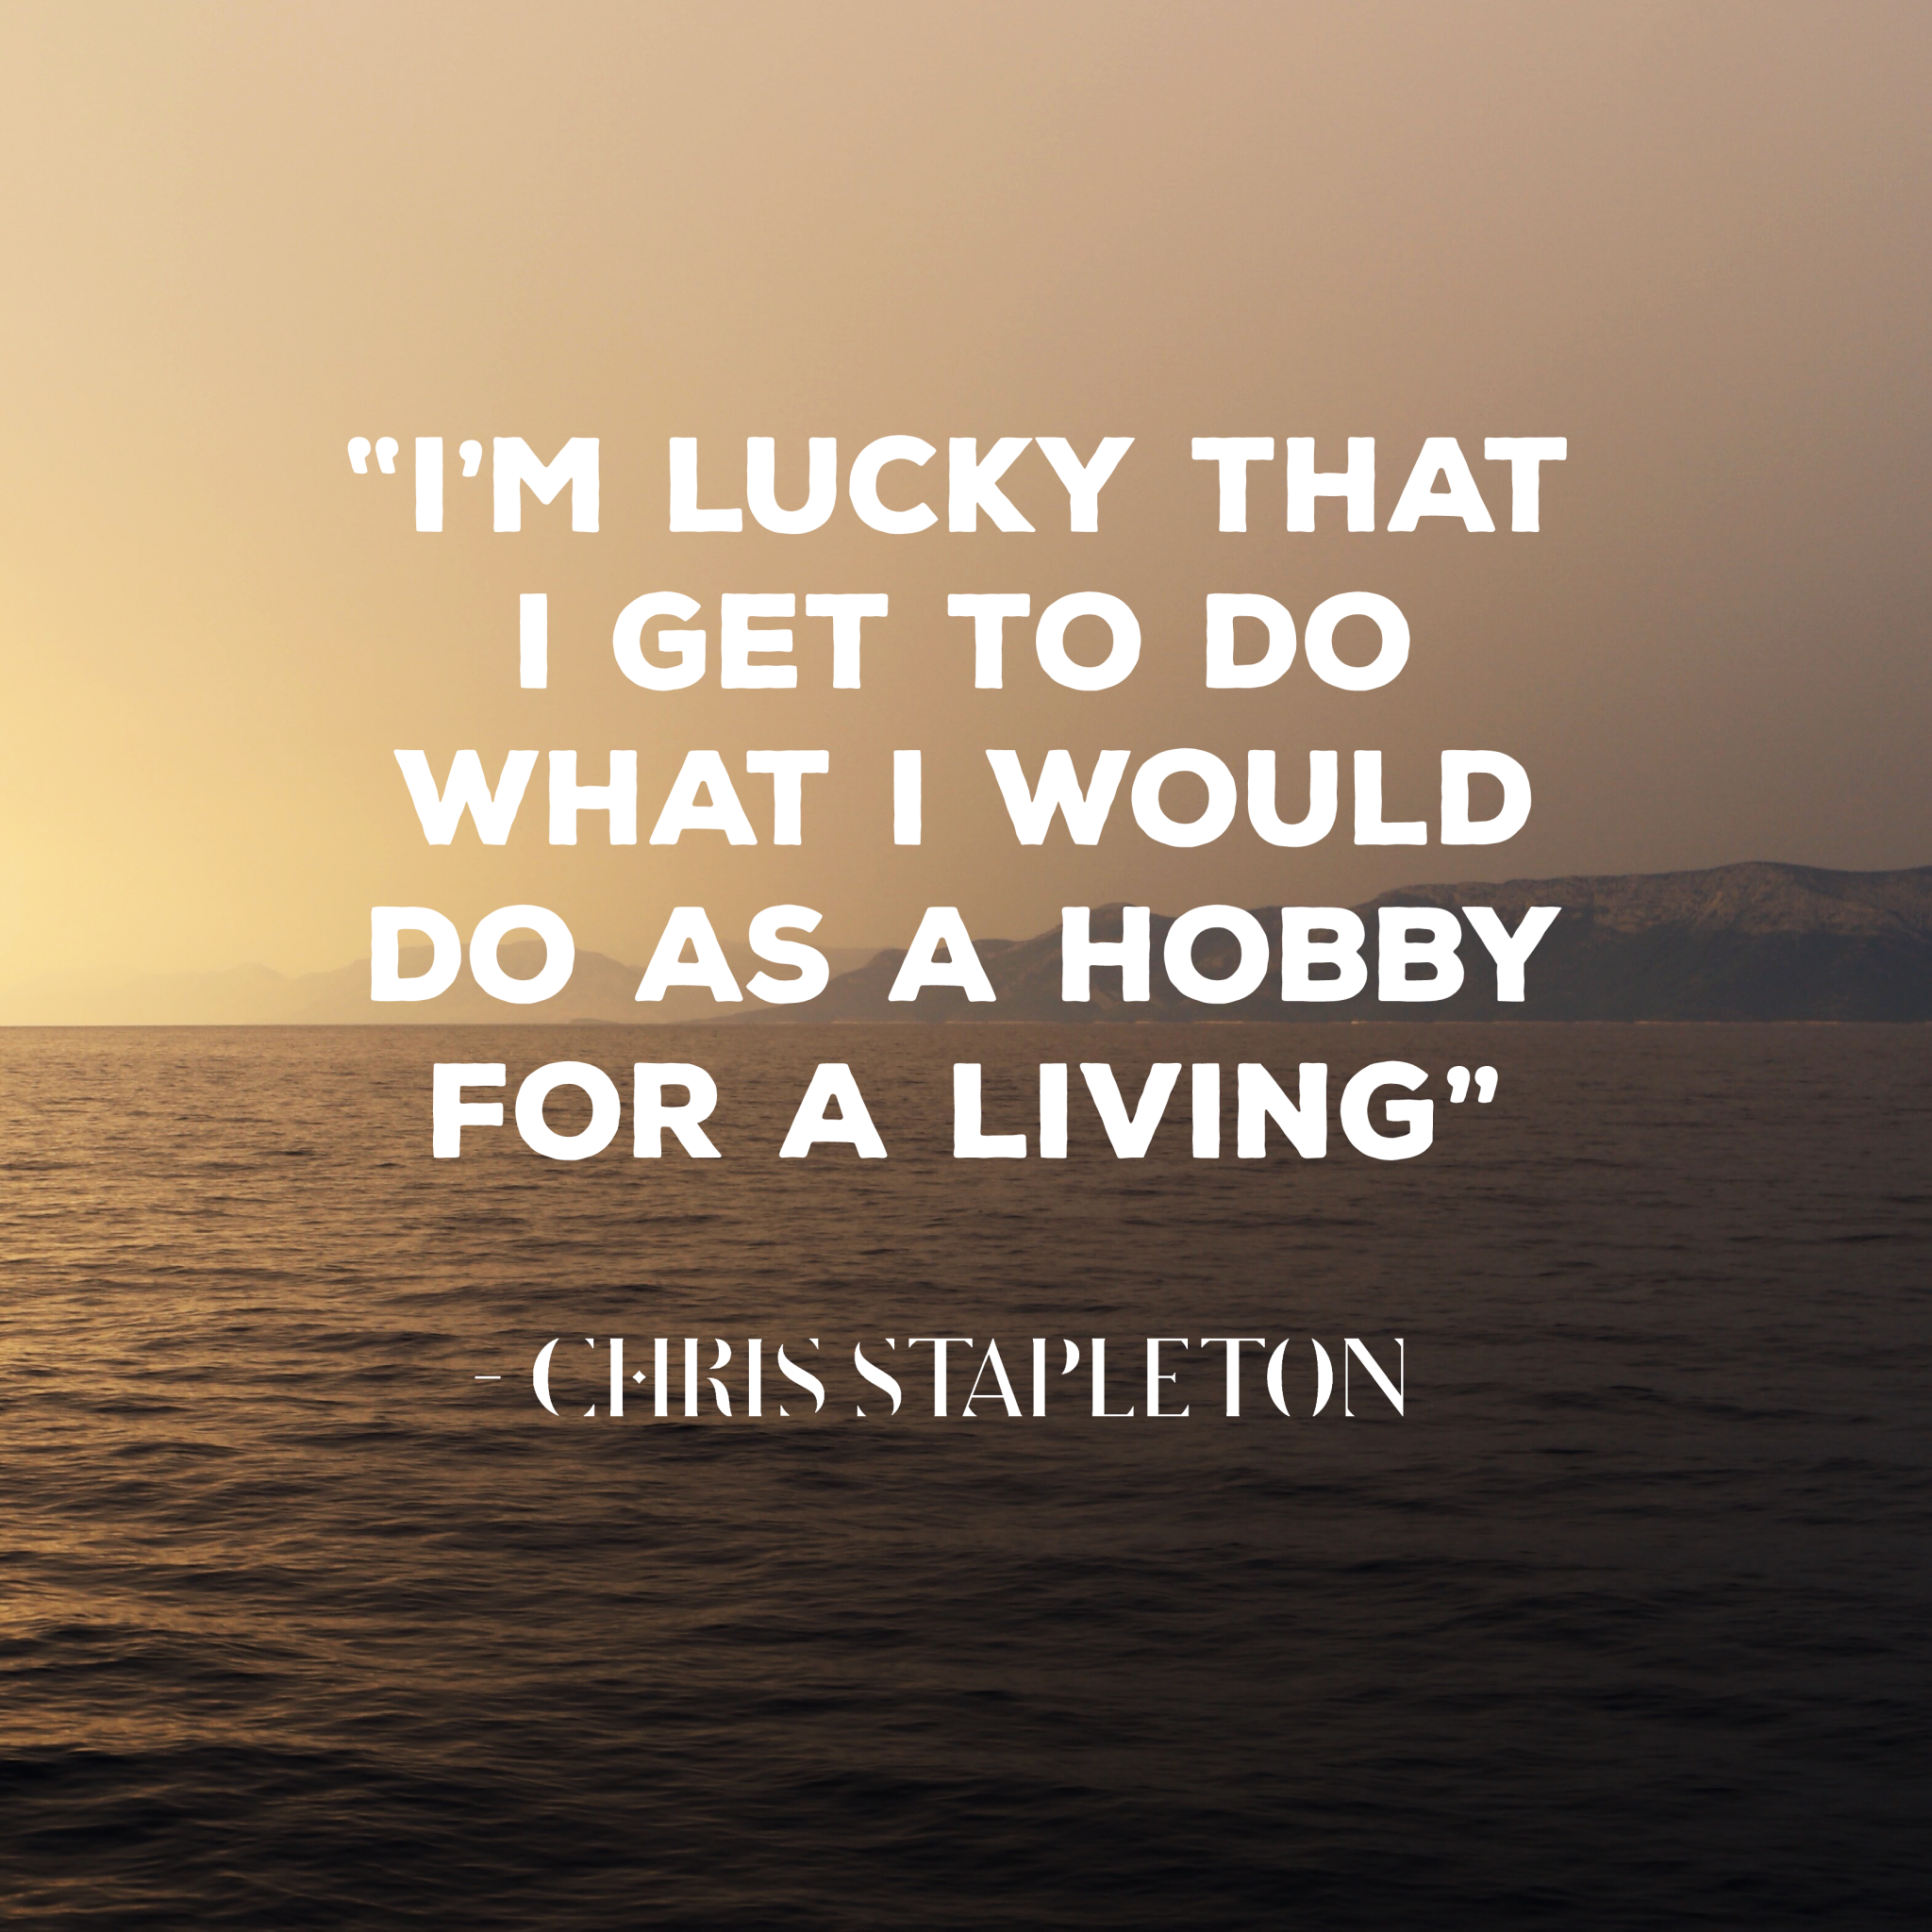 "I'm lucky that I get to do what I would do as a hobby for a living." Chris Stapleton